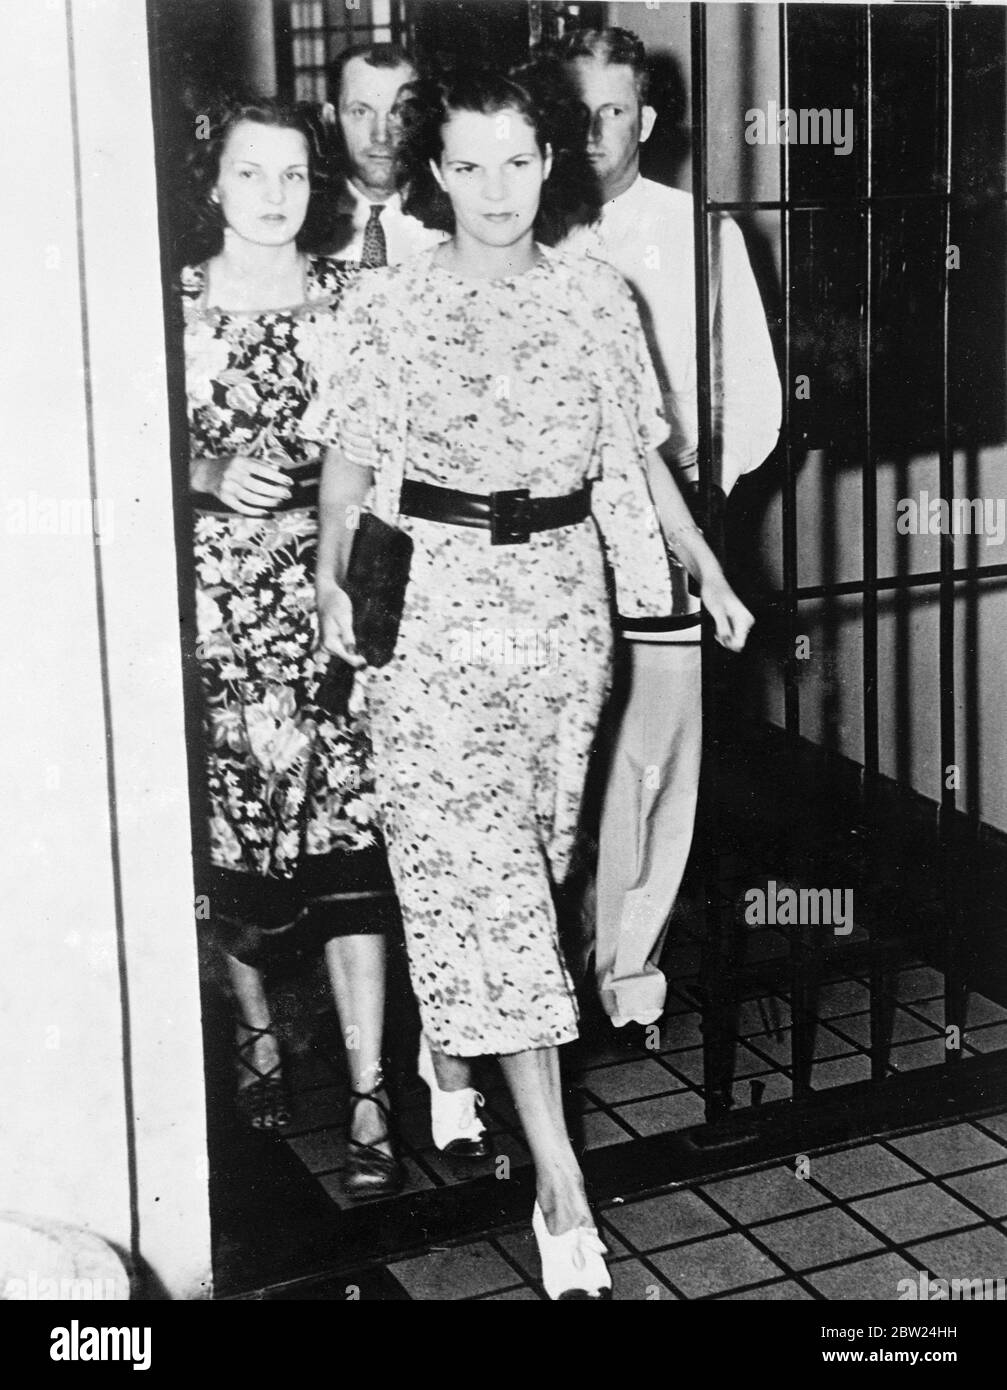 Miss Mildred Gaydon, 25-jährige Nachtclub-Zigarettenmädchen, wurde auf der Totschlag Anklage nach dem Tod Graf von Covadonga, Sohn des Ex-König von Spanien, bei diesem Autounfall in Miami, Florida verletzt gehalten. Der Graf fuhr mit Miss Gaydon, als das Auto in einen Telegrafenmast stürzte. Das Mädchen wurde später freigelassen, als eine Jury ein Urteil des zufälligen Todes einbrachte. Foto zeigt: Miss Gaydon verlässt das Gefängnis im Landkreis Dade. 12. September 1938 Stockfoto